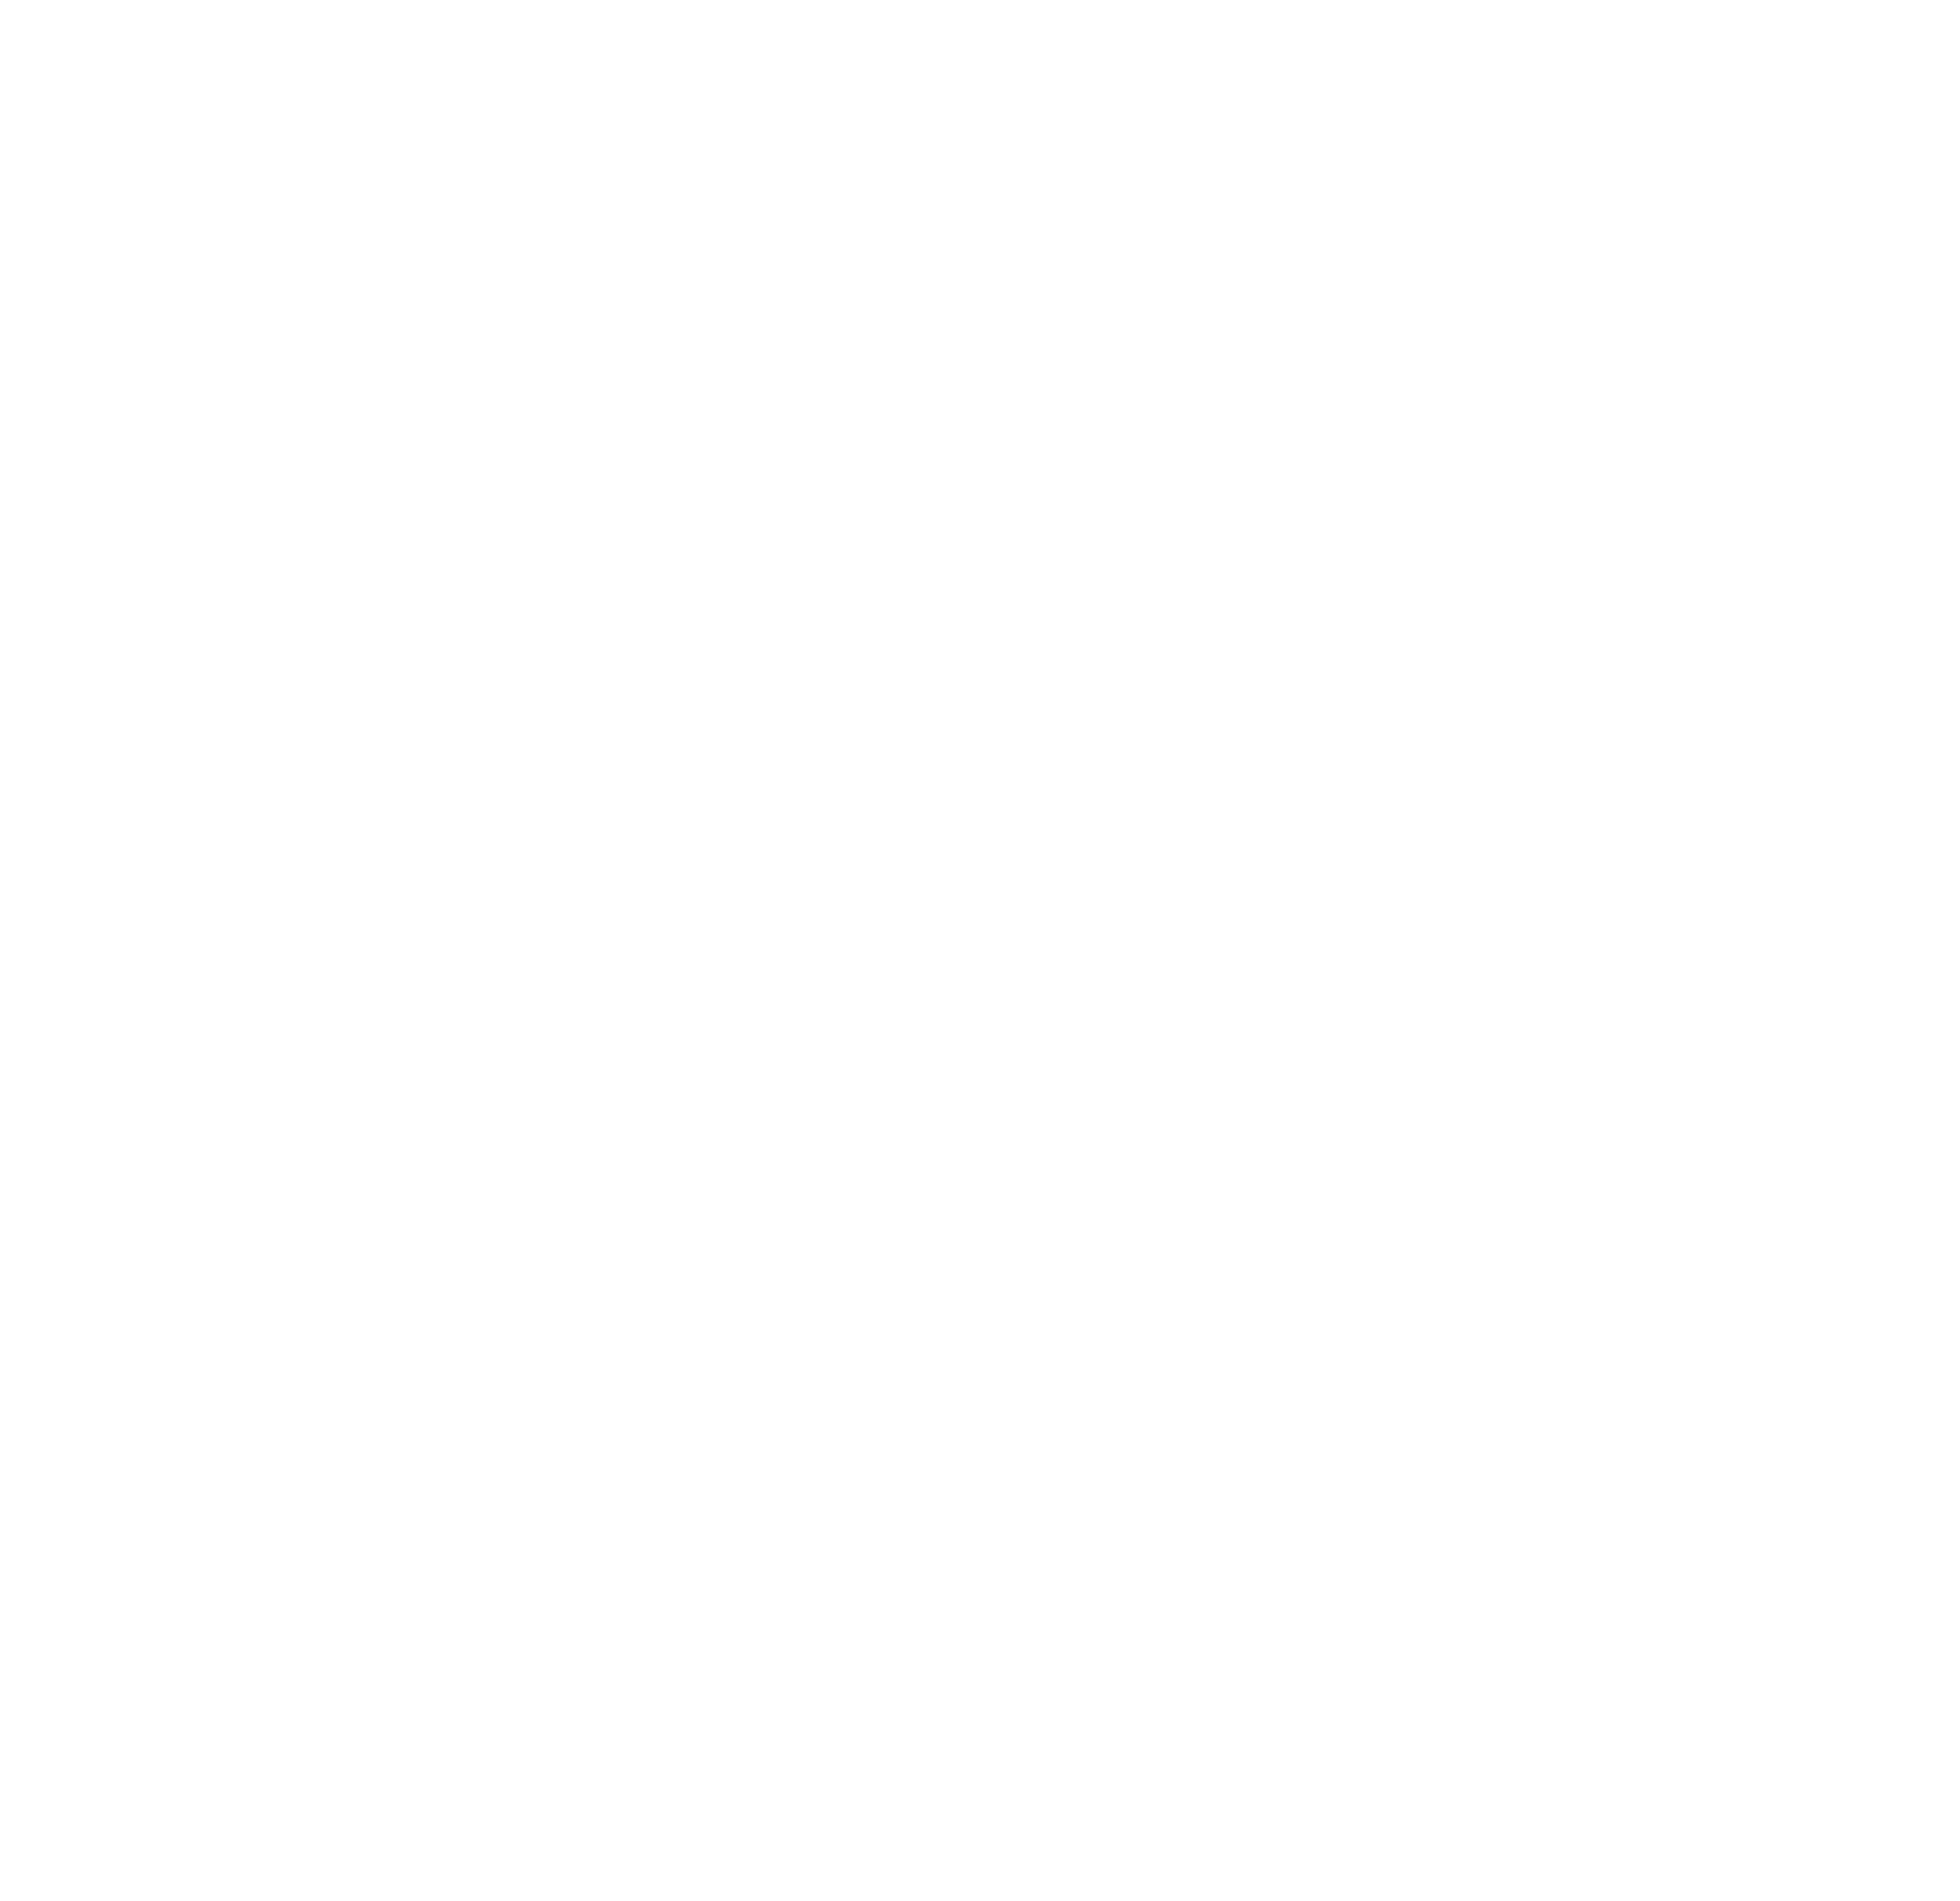 Descarga del documento 4 para PRADO (entrega grupal)